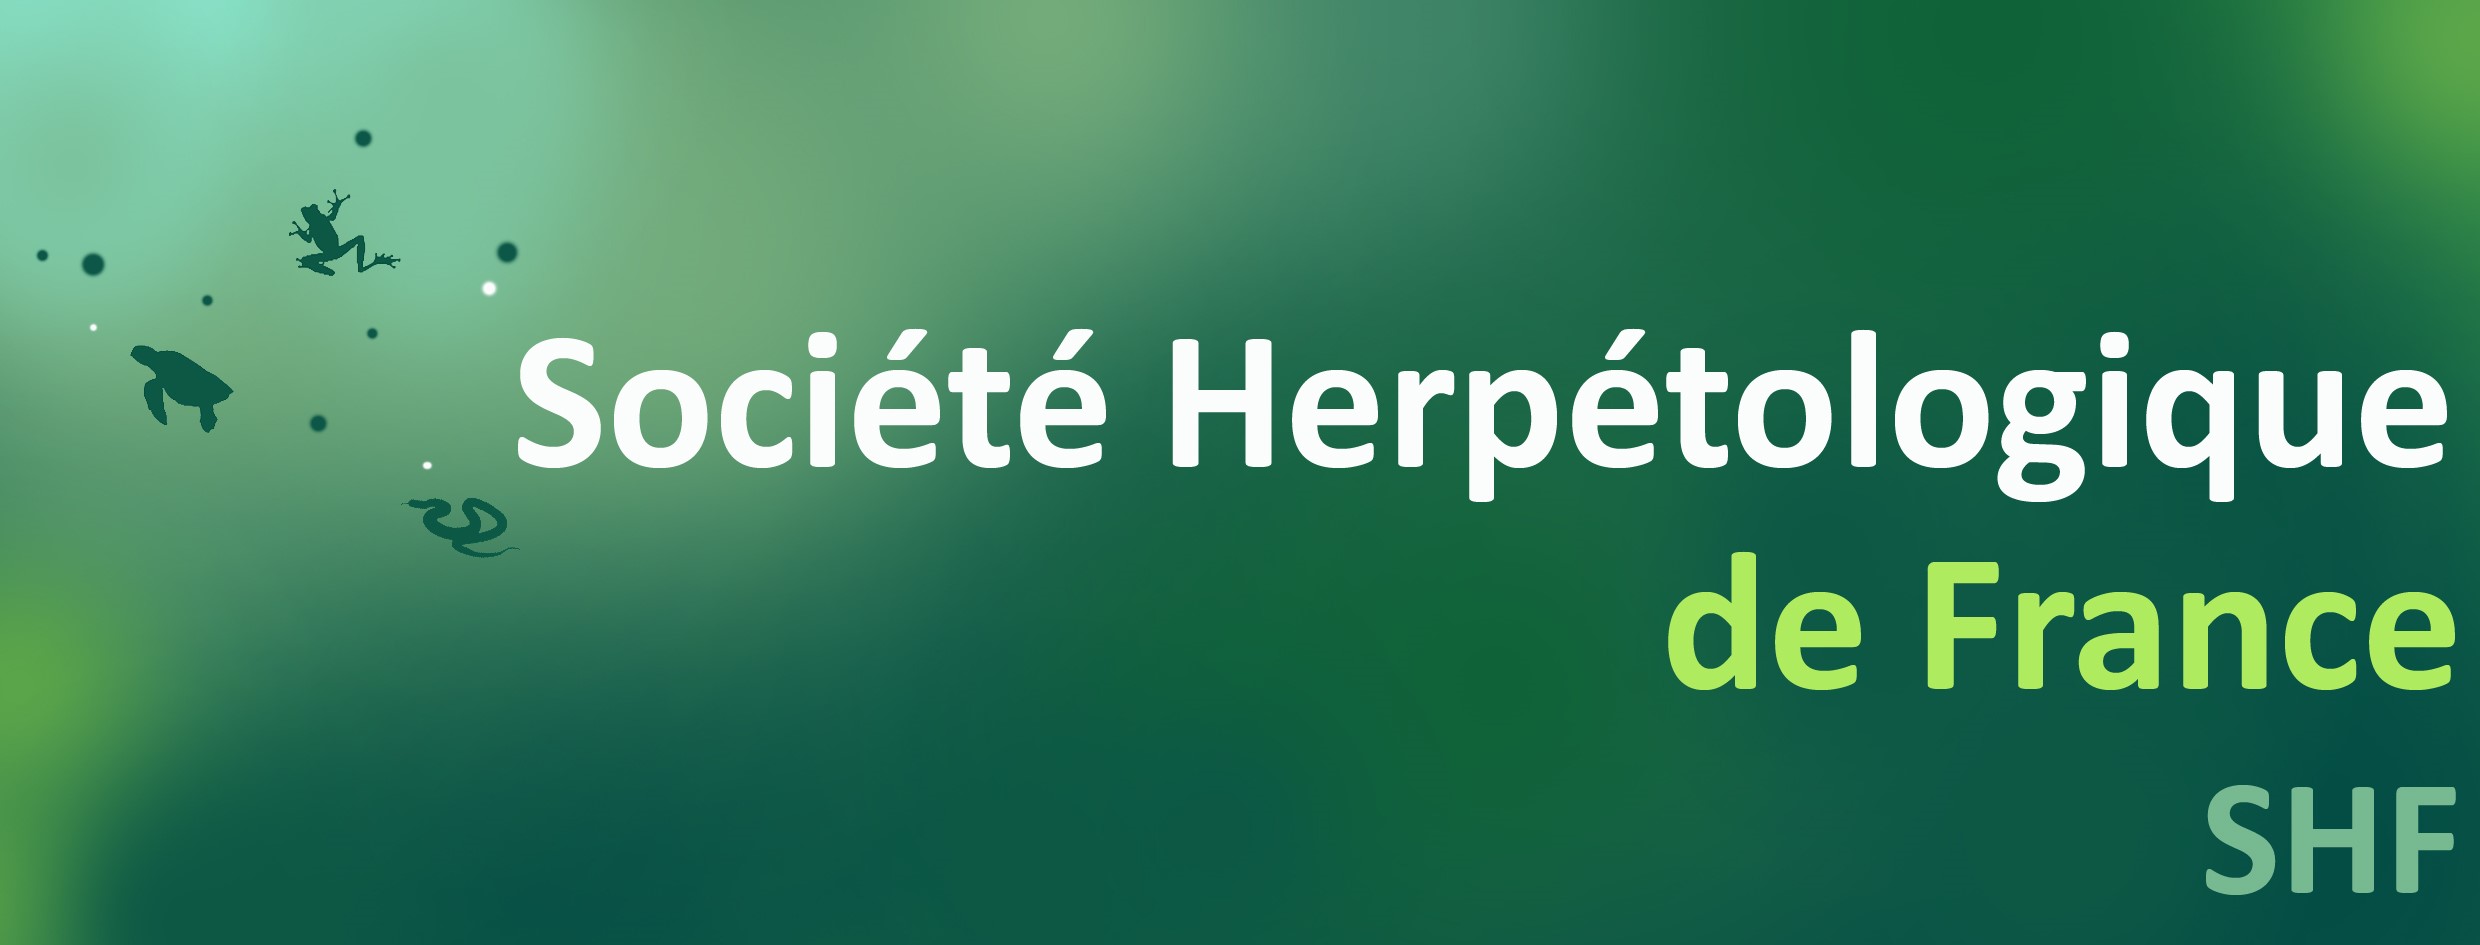 logo société herpétologique de France